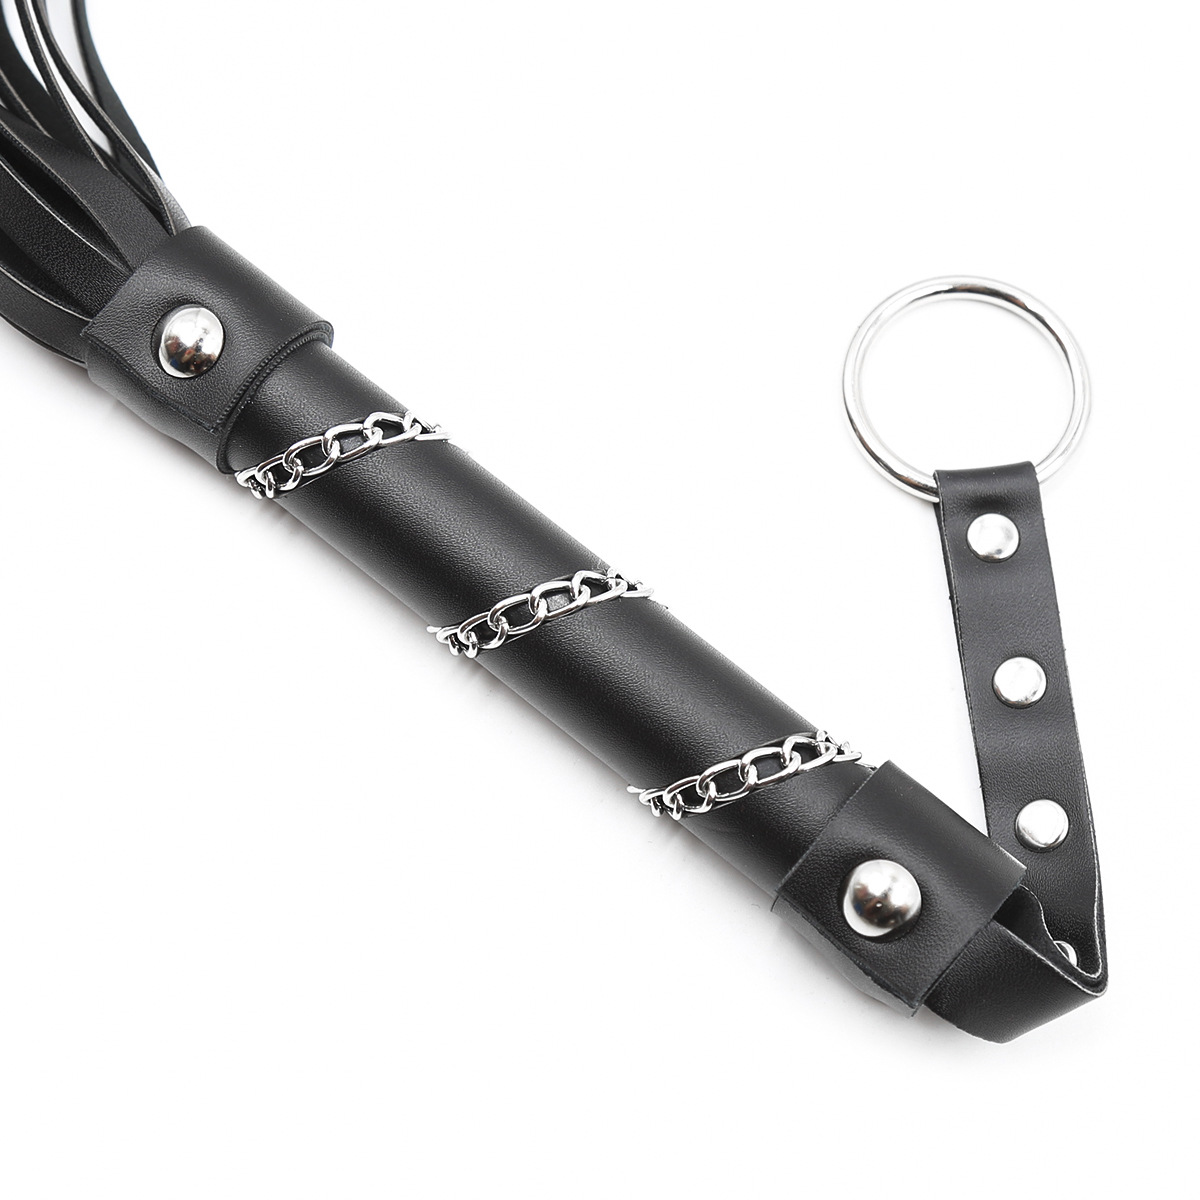 Iron Chain Hander Whip